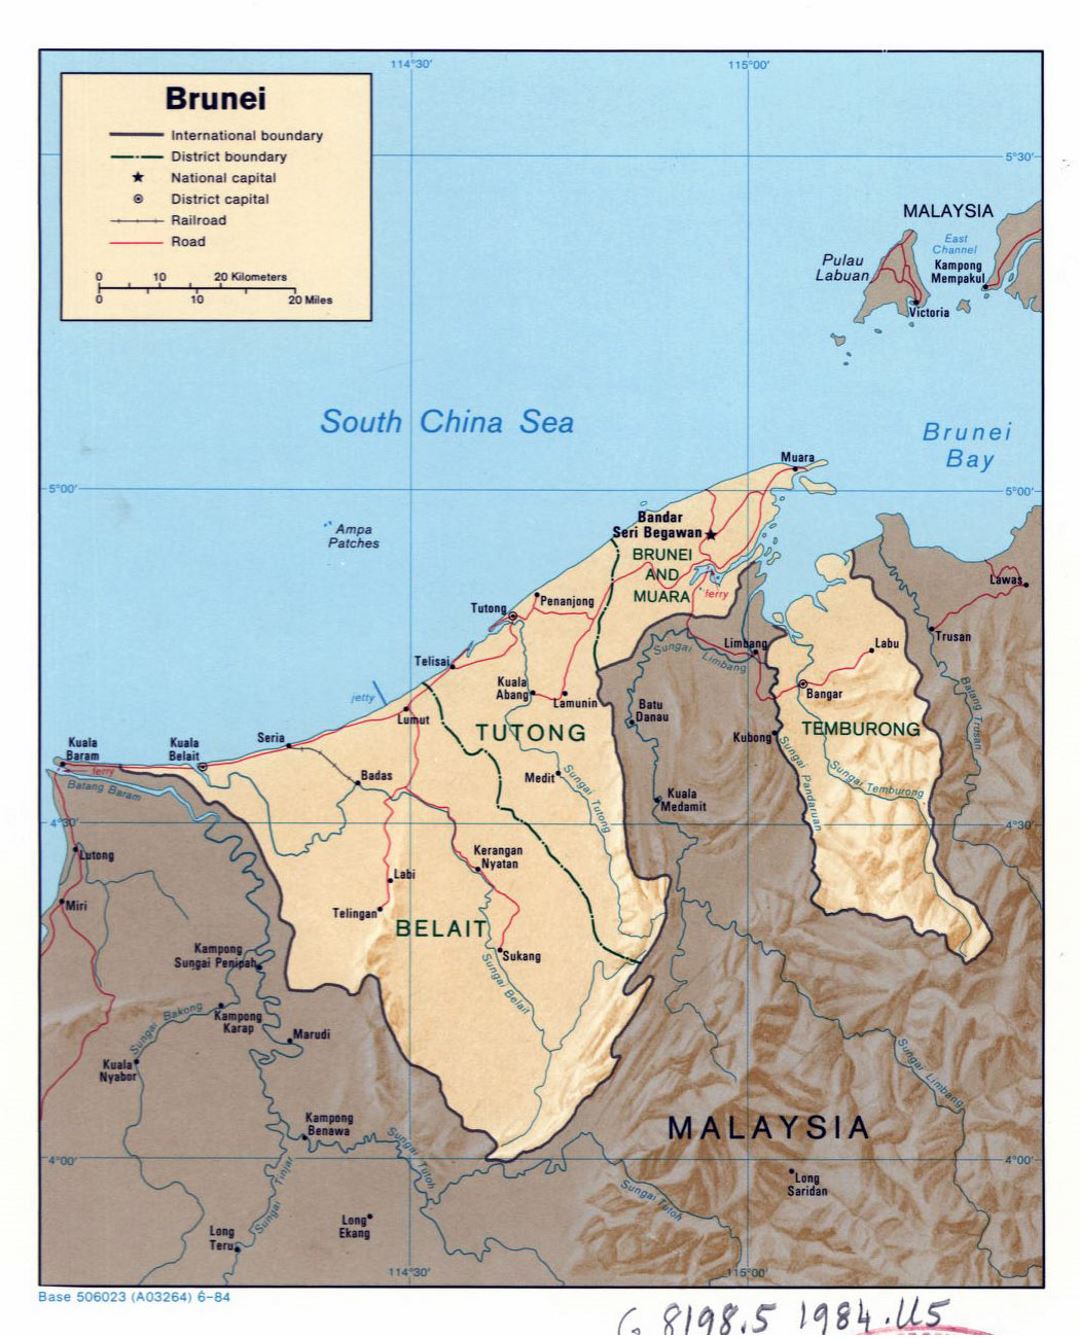 Detallado mapa político y administrativo de Brunei con relieve, carreteras, ferrocarriles y principales ciudades - 1984